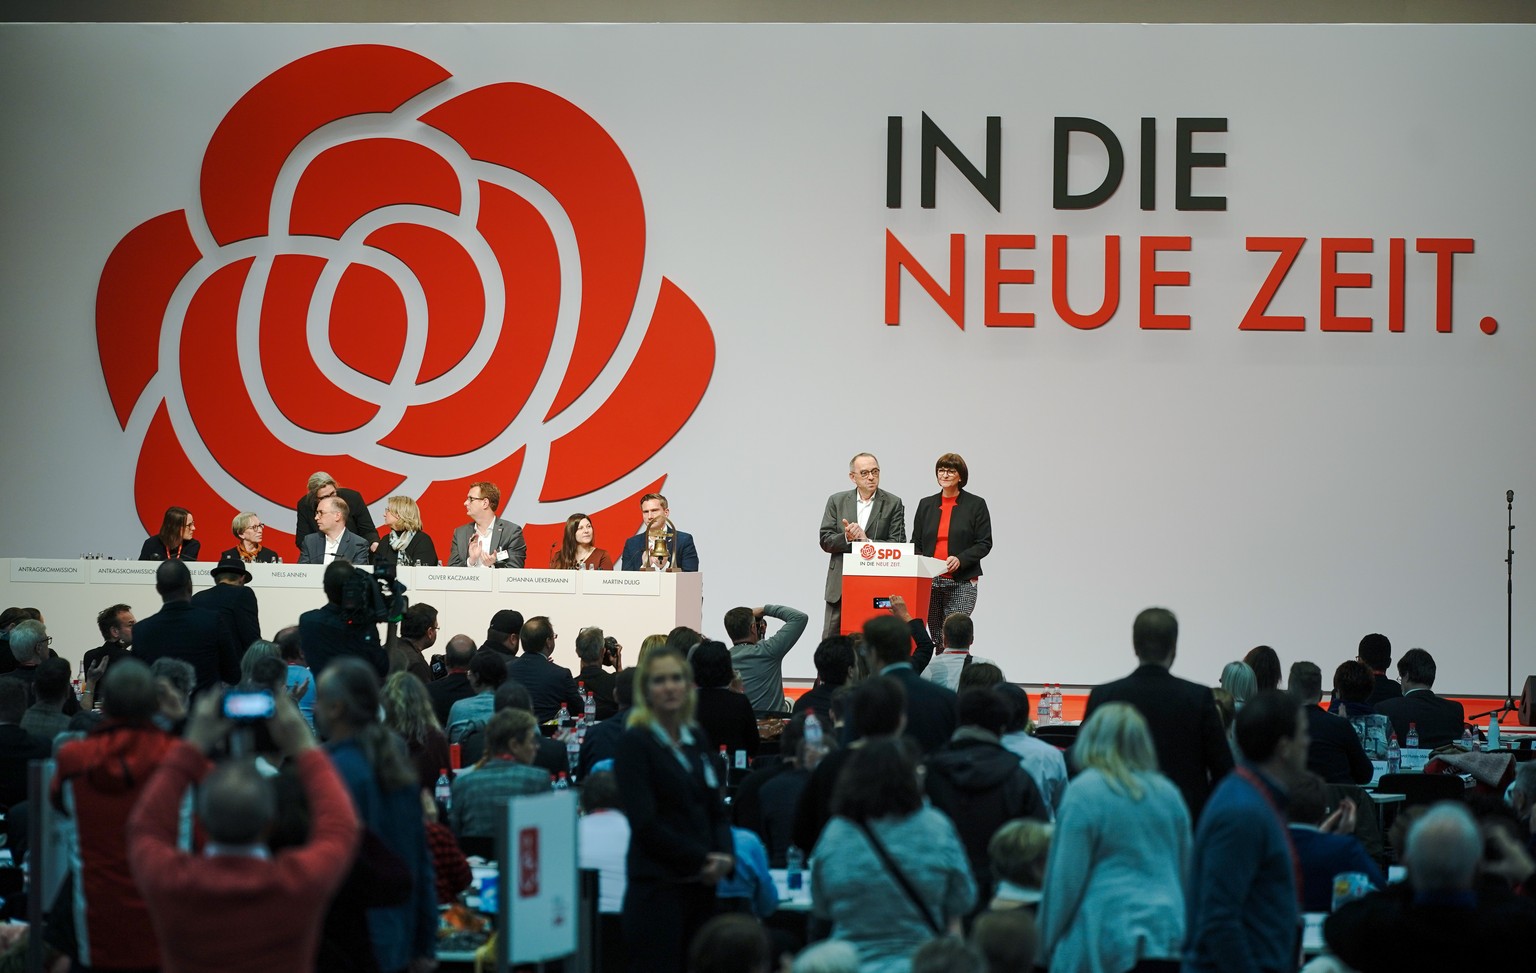 08.12.2019, Berlin: Norbert Walter-Borjans und Saskia Esken, die beiden Bundesvorsitzenden der SPD, stehen am Rednerpult und sprechen beim SPD-Bundesparteitag die Schlussworte. Am dritten und letzten  ...